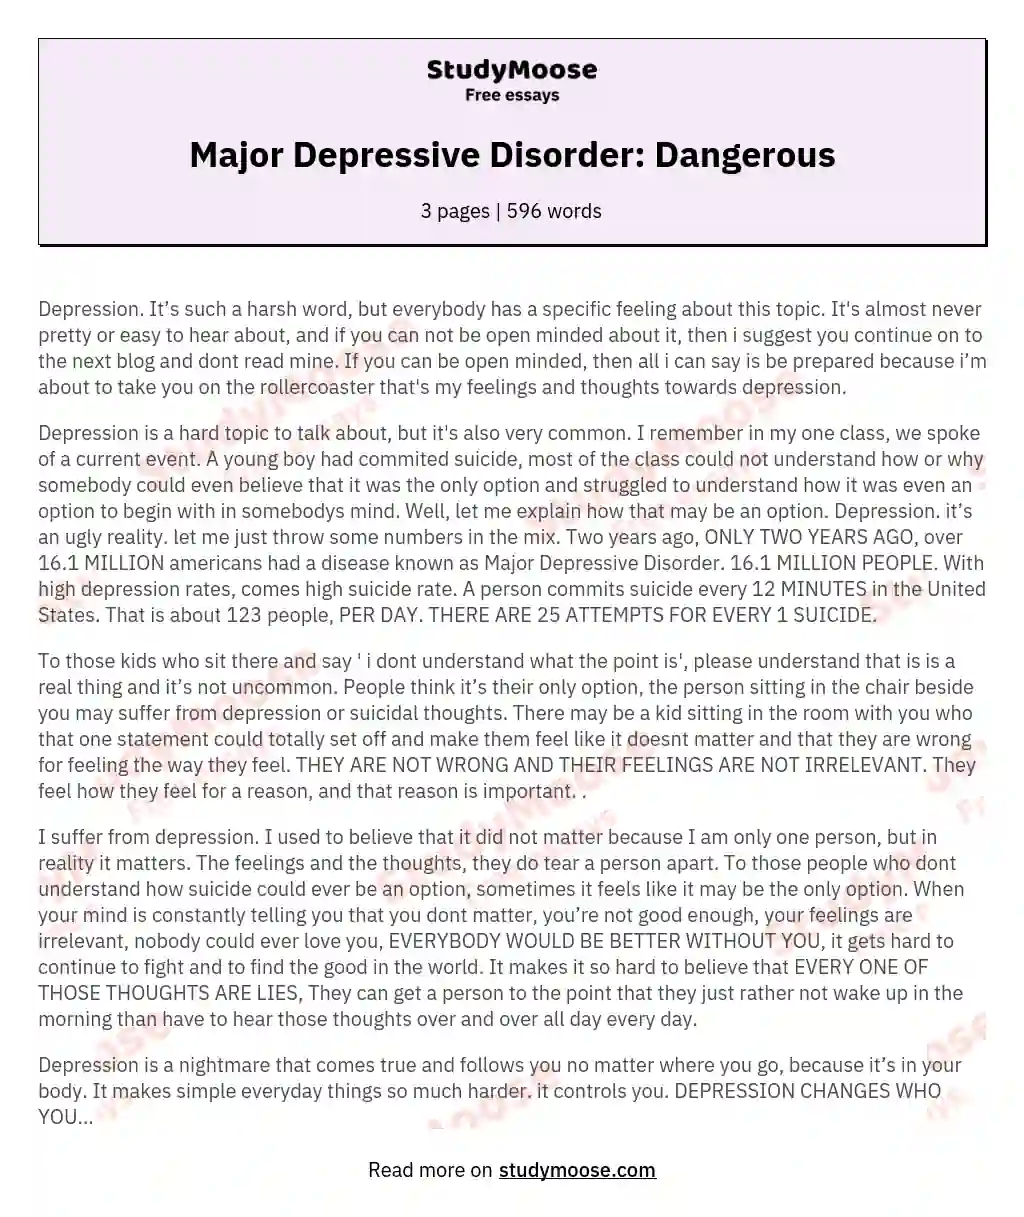 Major Depressive Disorder: Dangerous essay